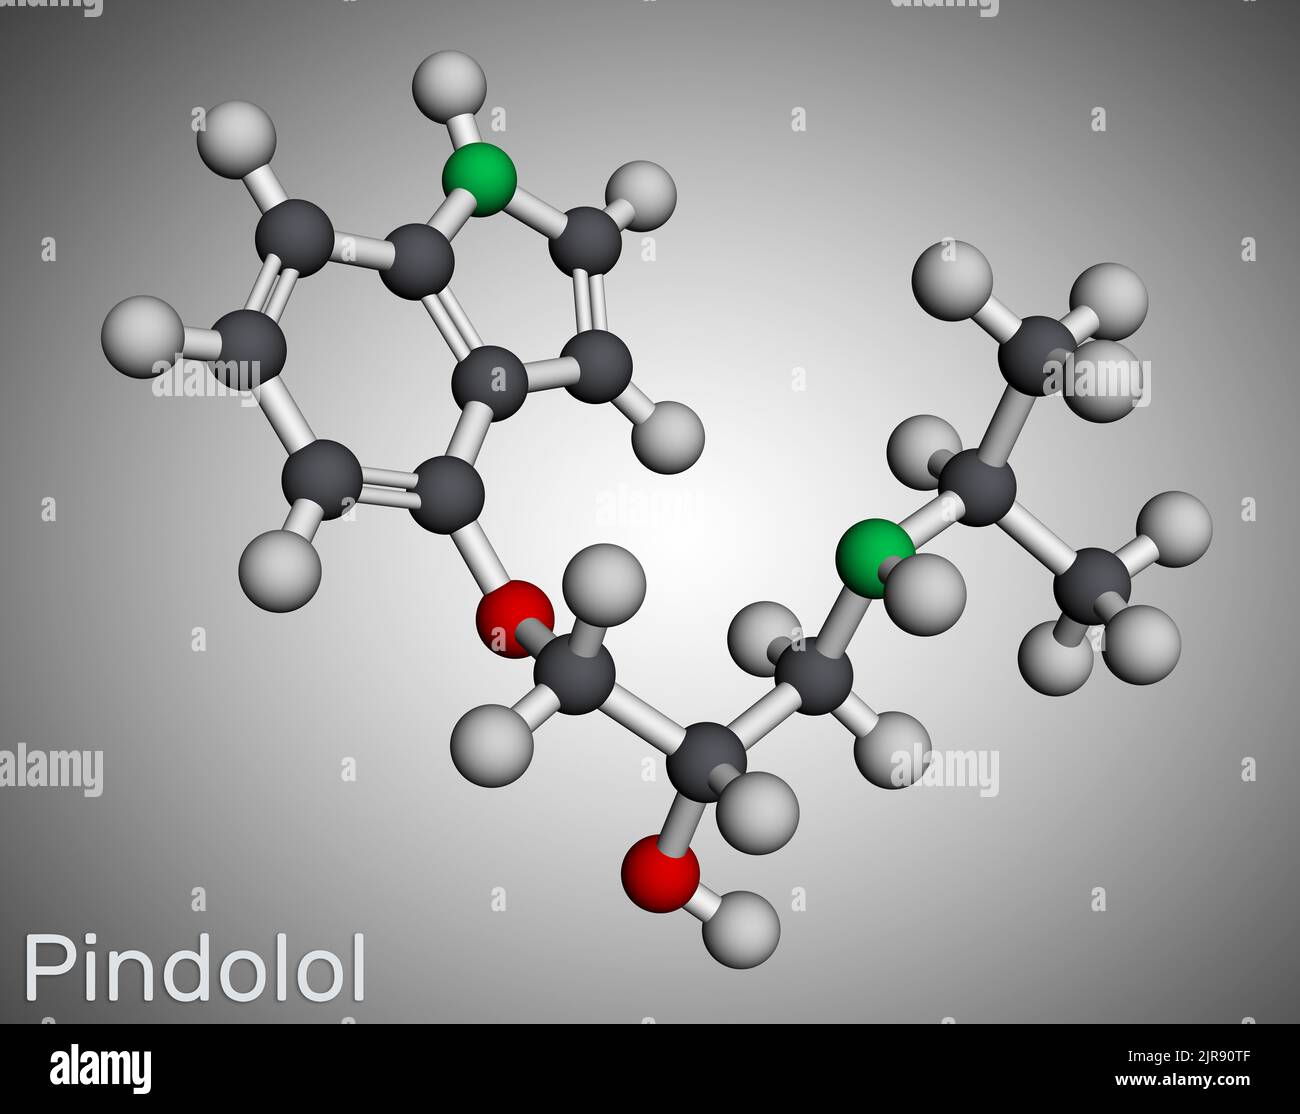 Pindolol-Molekül. Es ist ein nicht selektiver Beta-Adrenergie-Rezeptorblocker, der zur Behandlung von Bluthochdruck und Ödemen verwendet wird. Molekularmodell. 3D Rendern. Abbildung Stockfoto